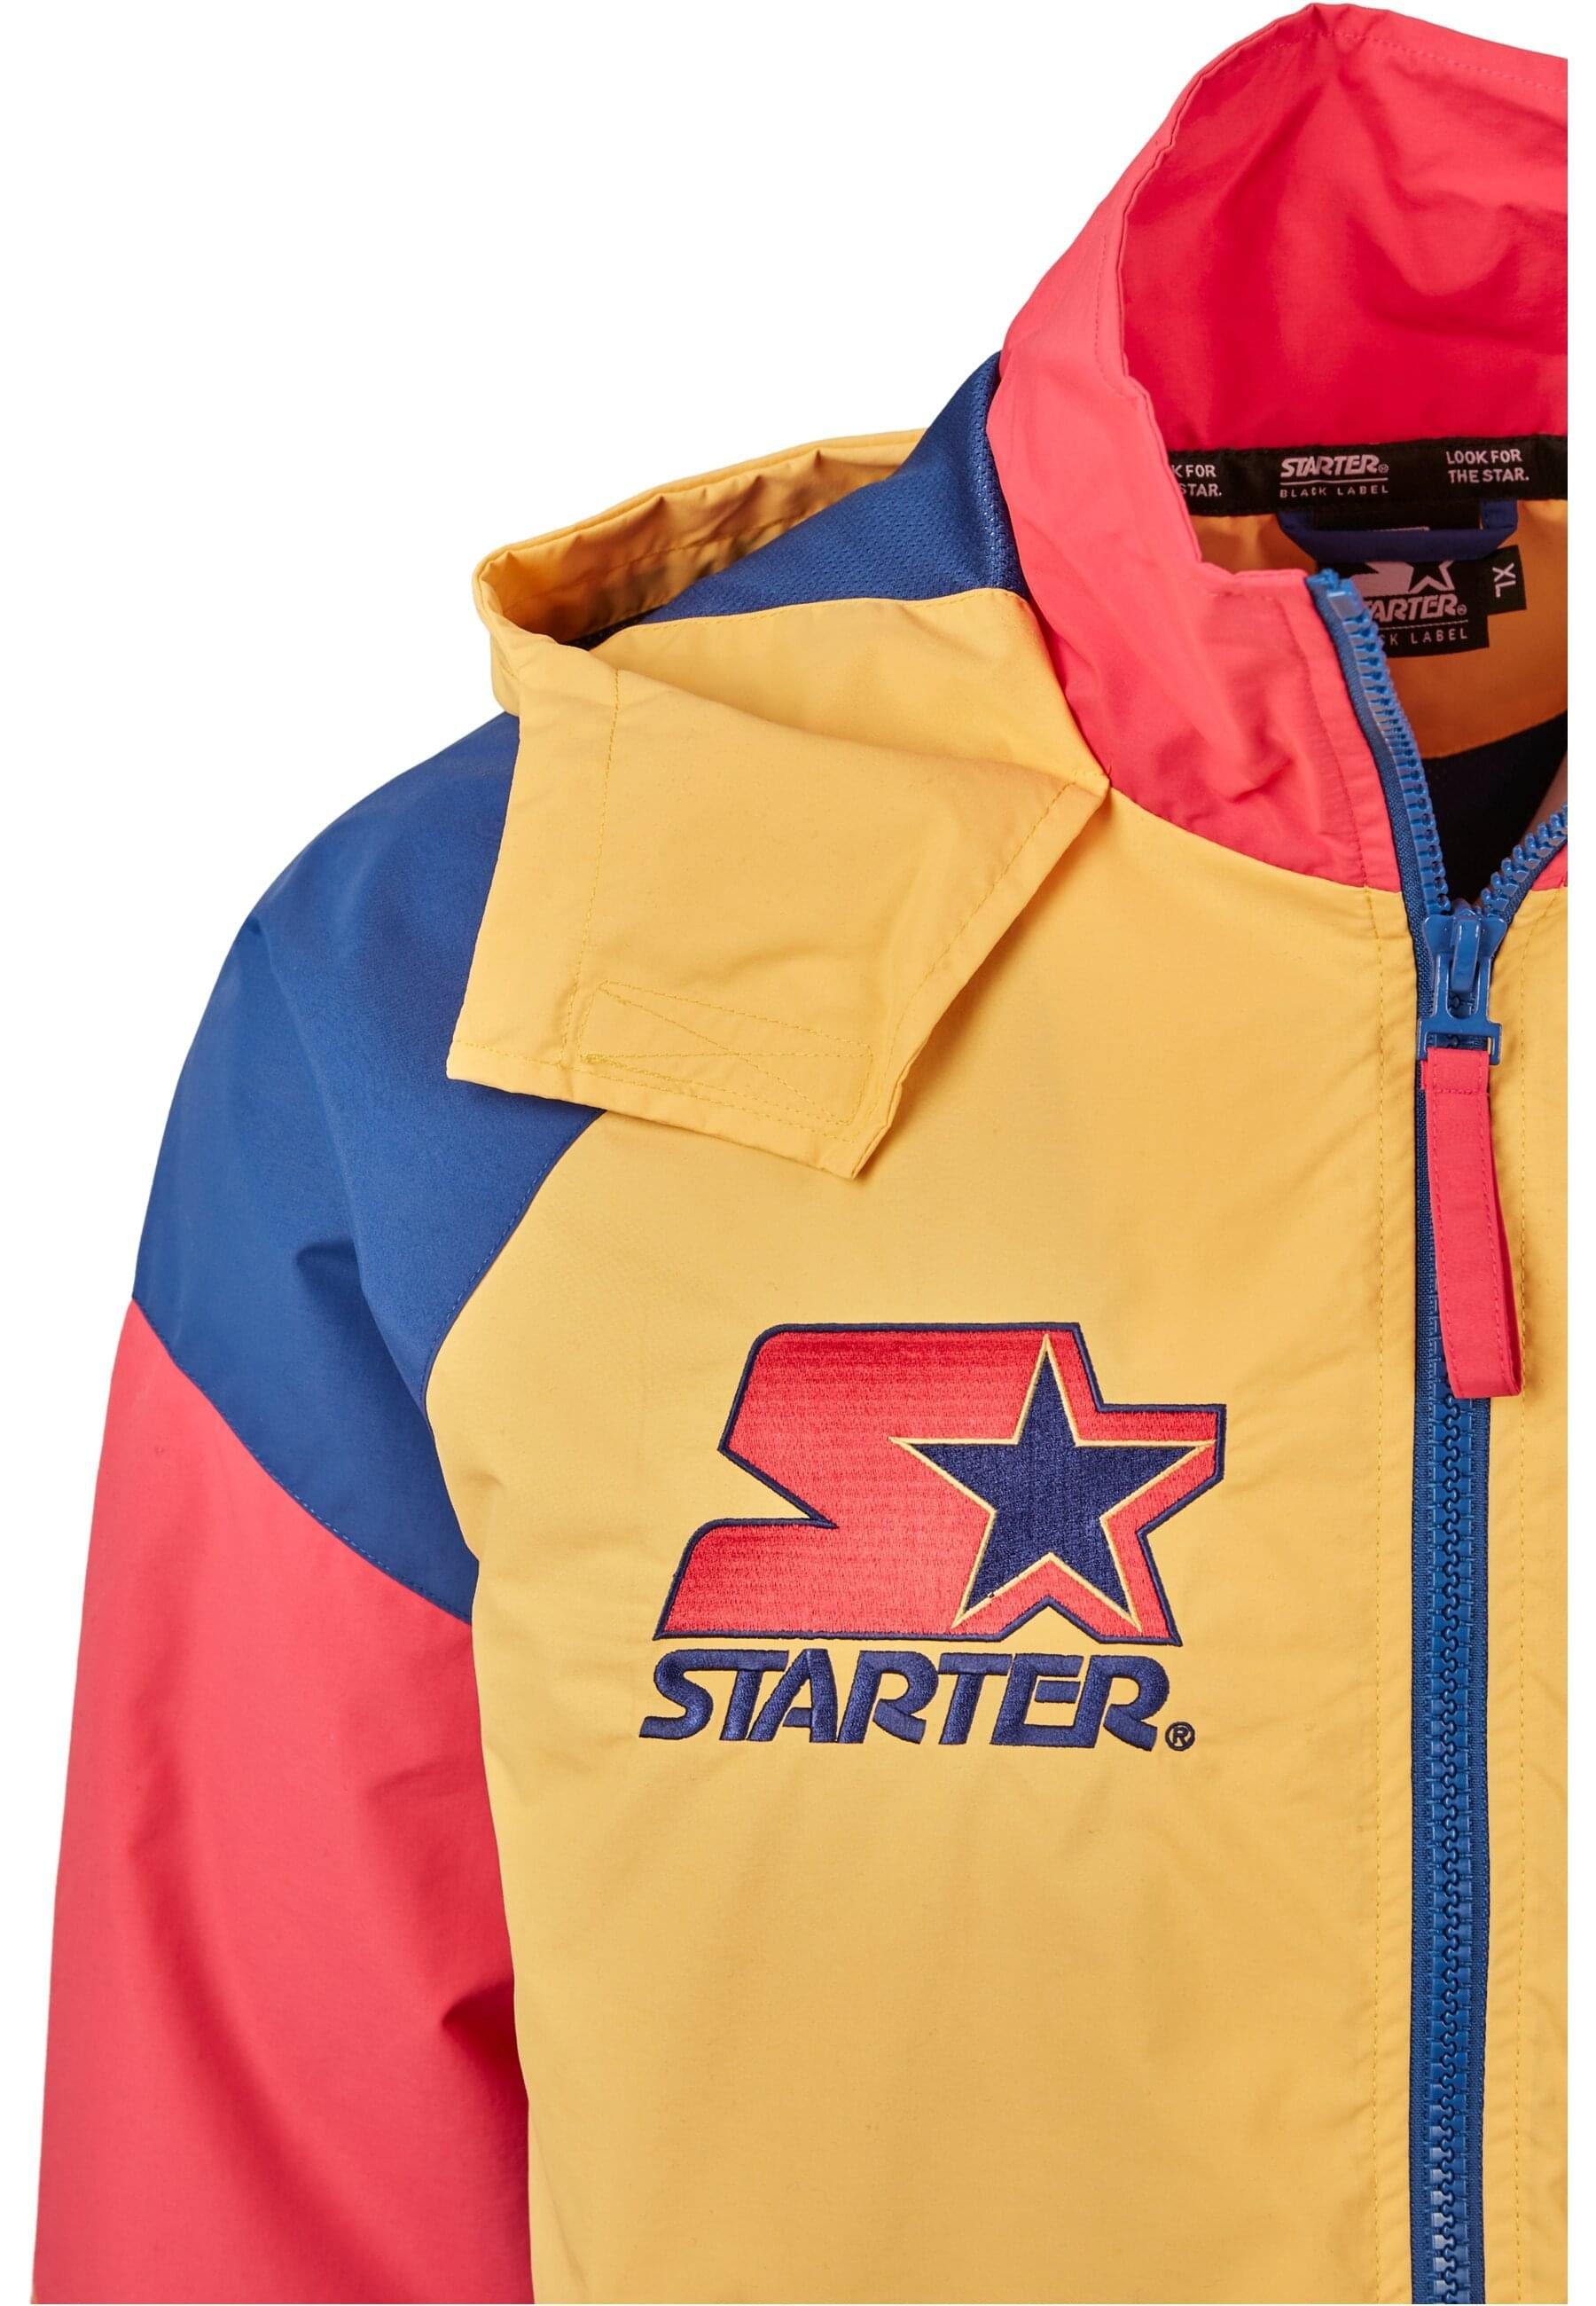 (1-St) Starter Starter Jacket Sommerjacke Logo Multicolored Herren